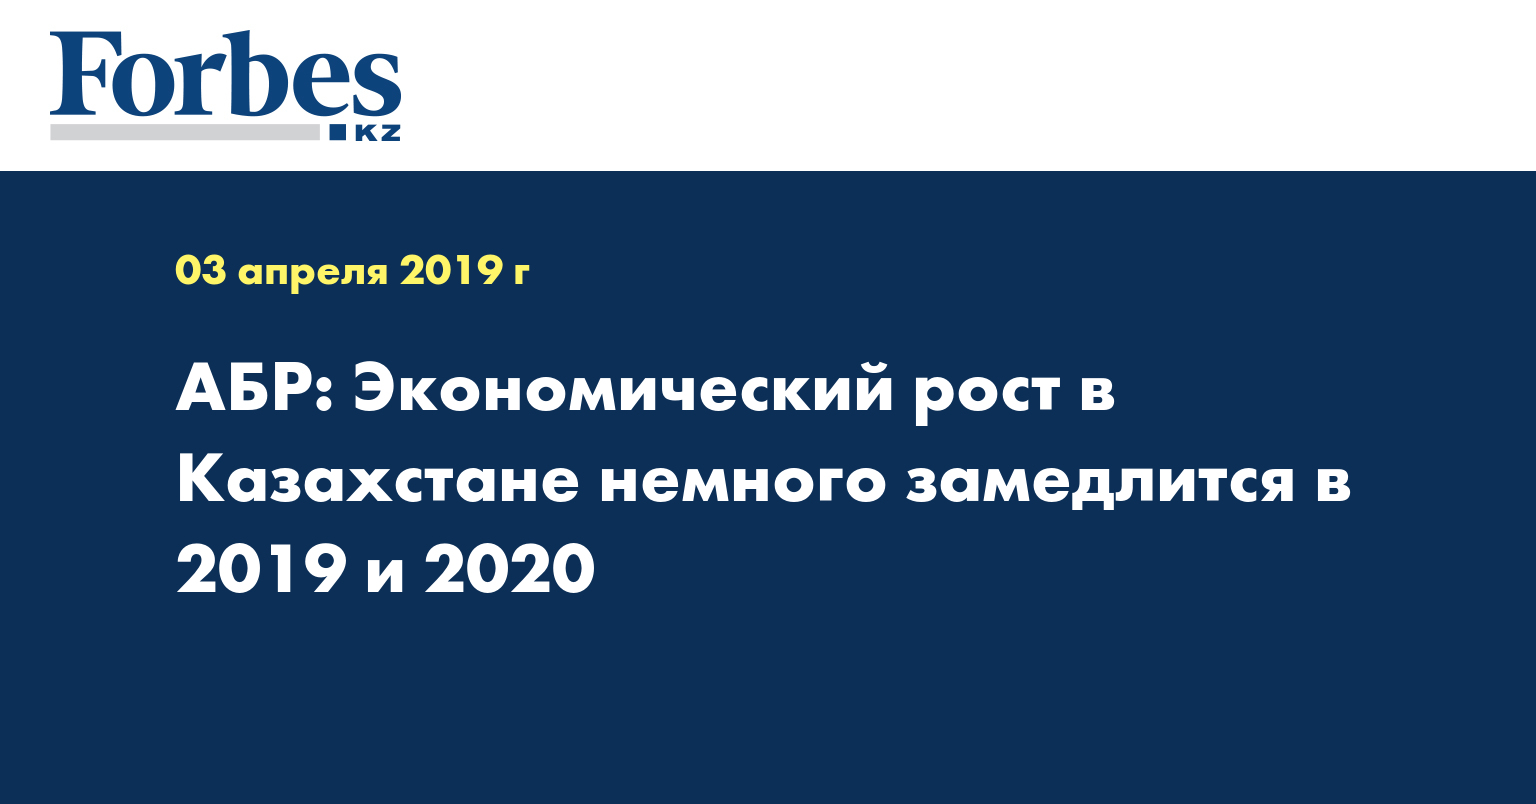 АБР: Экономический рост в Казахстане немного замедлится в 2019 и 2020 